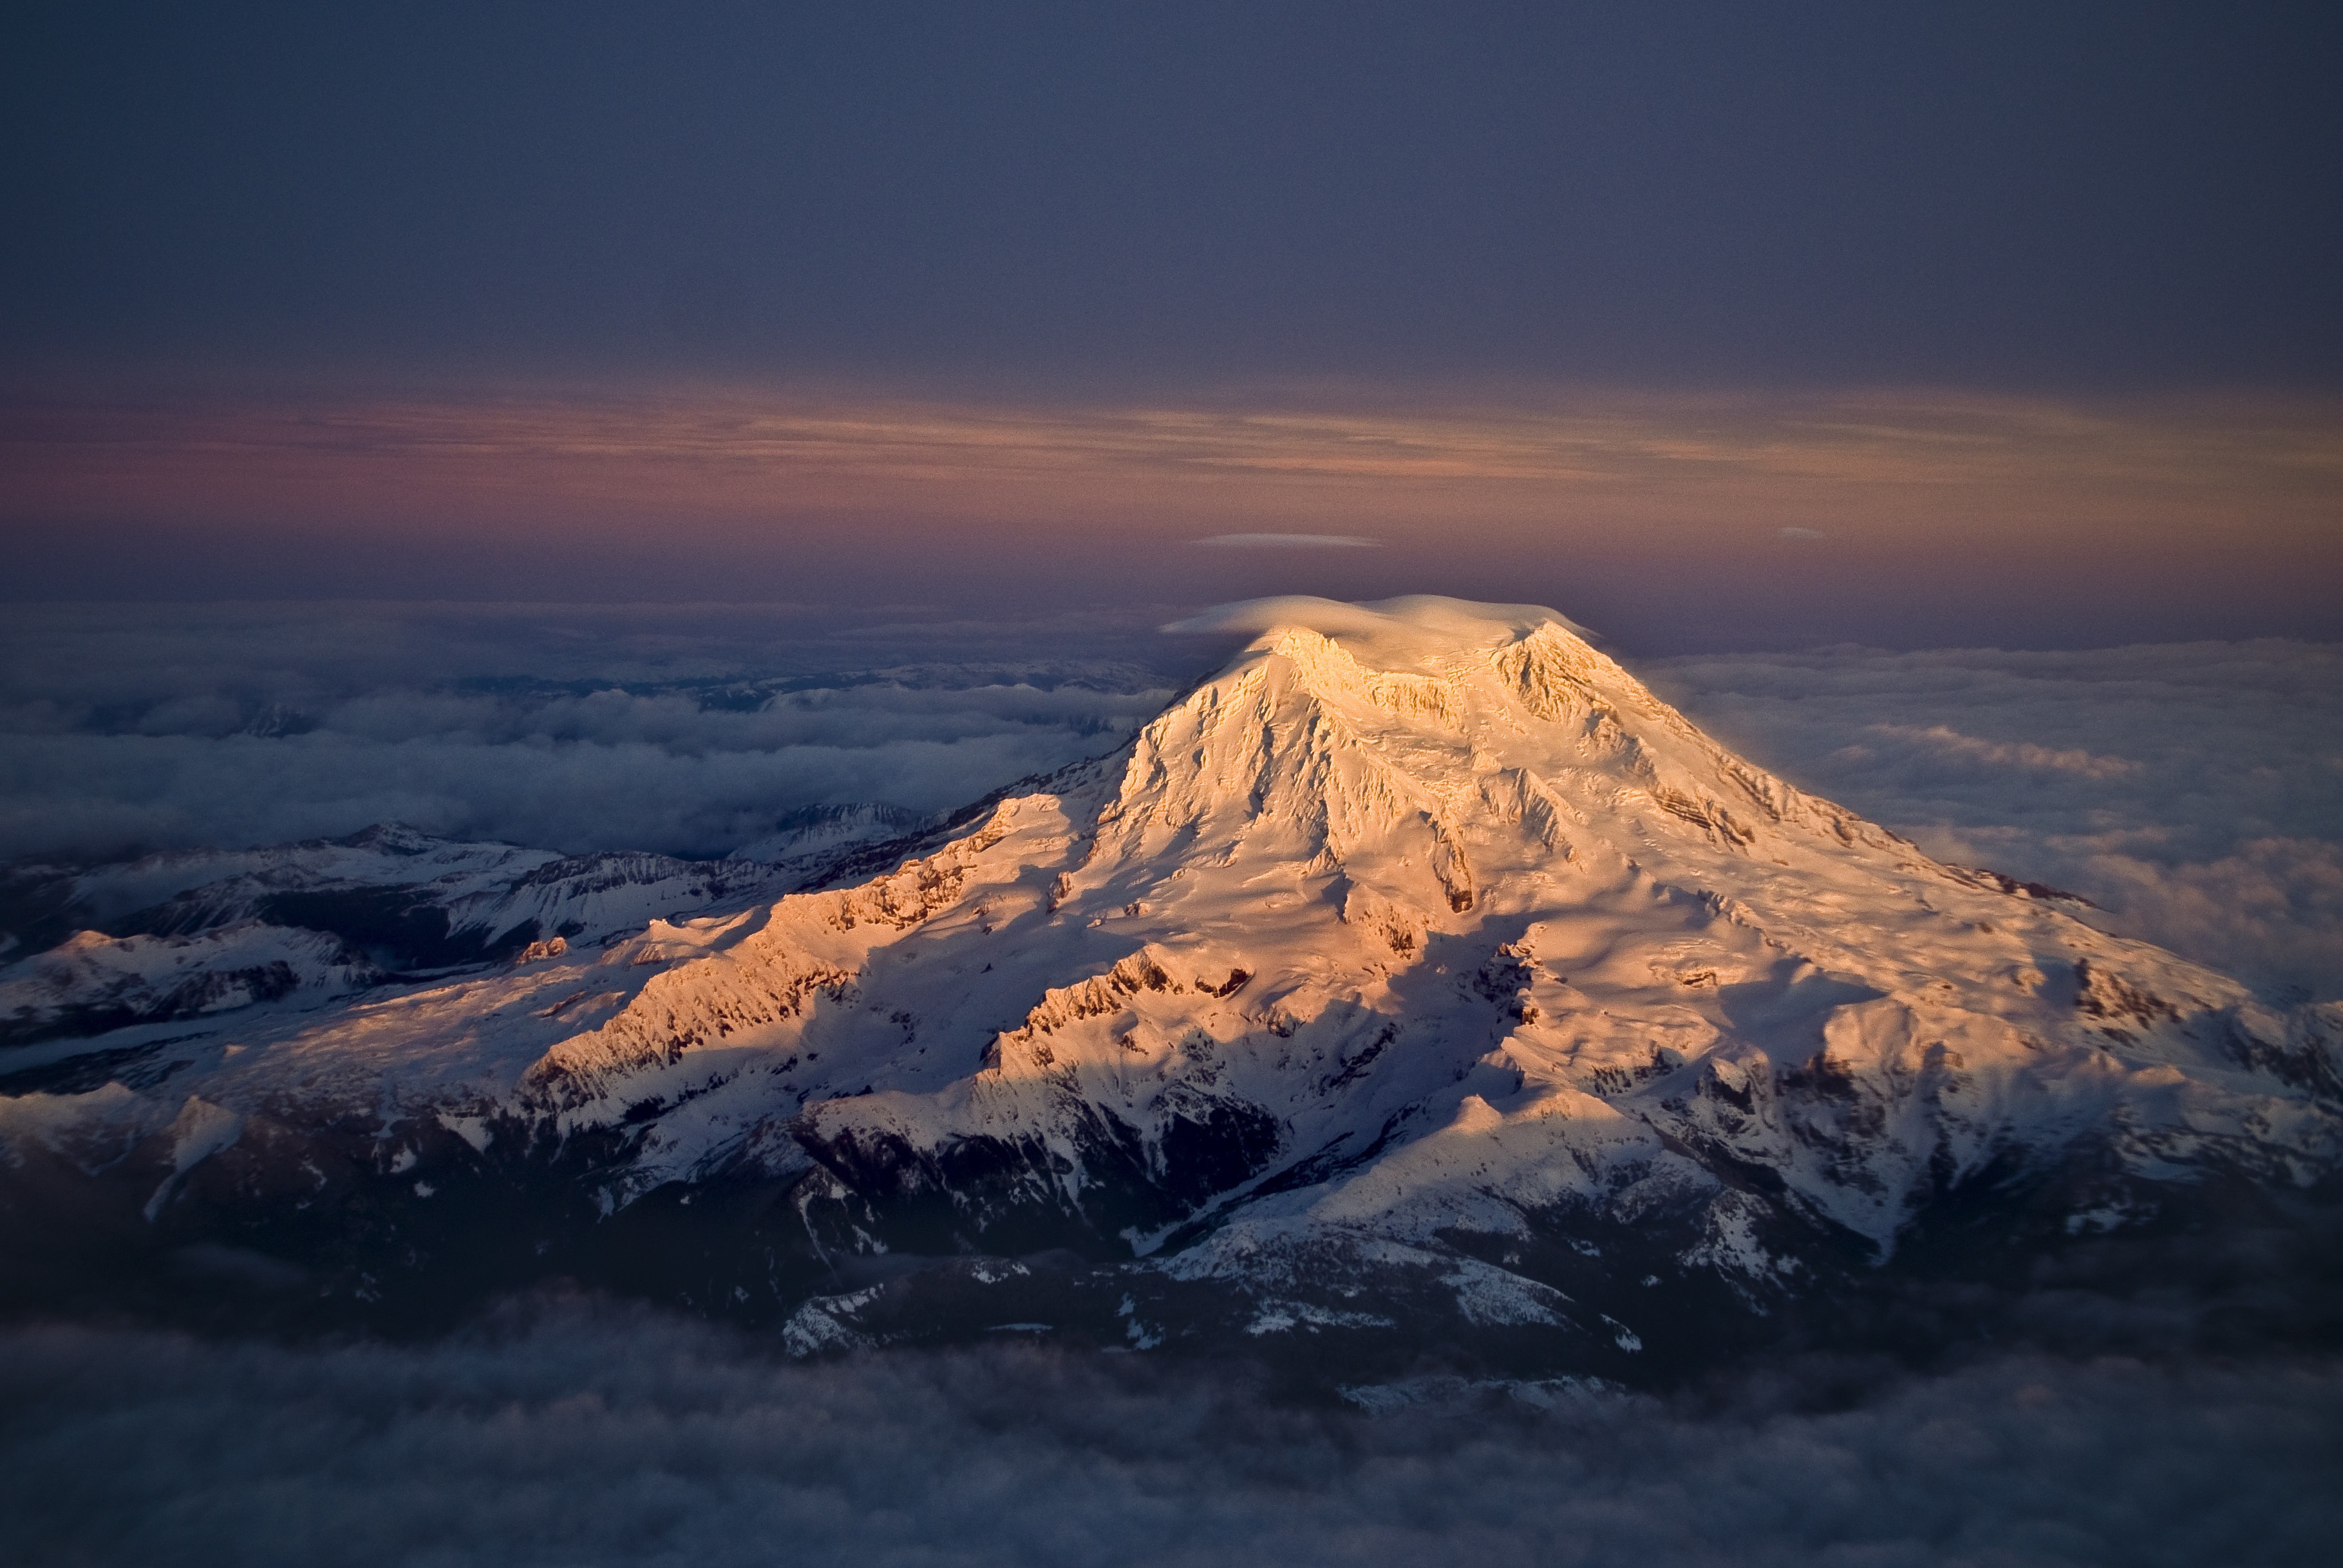 General 3639x2436 Mount Rainier mountains aerial view dusk nature landscape snowy peak